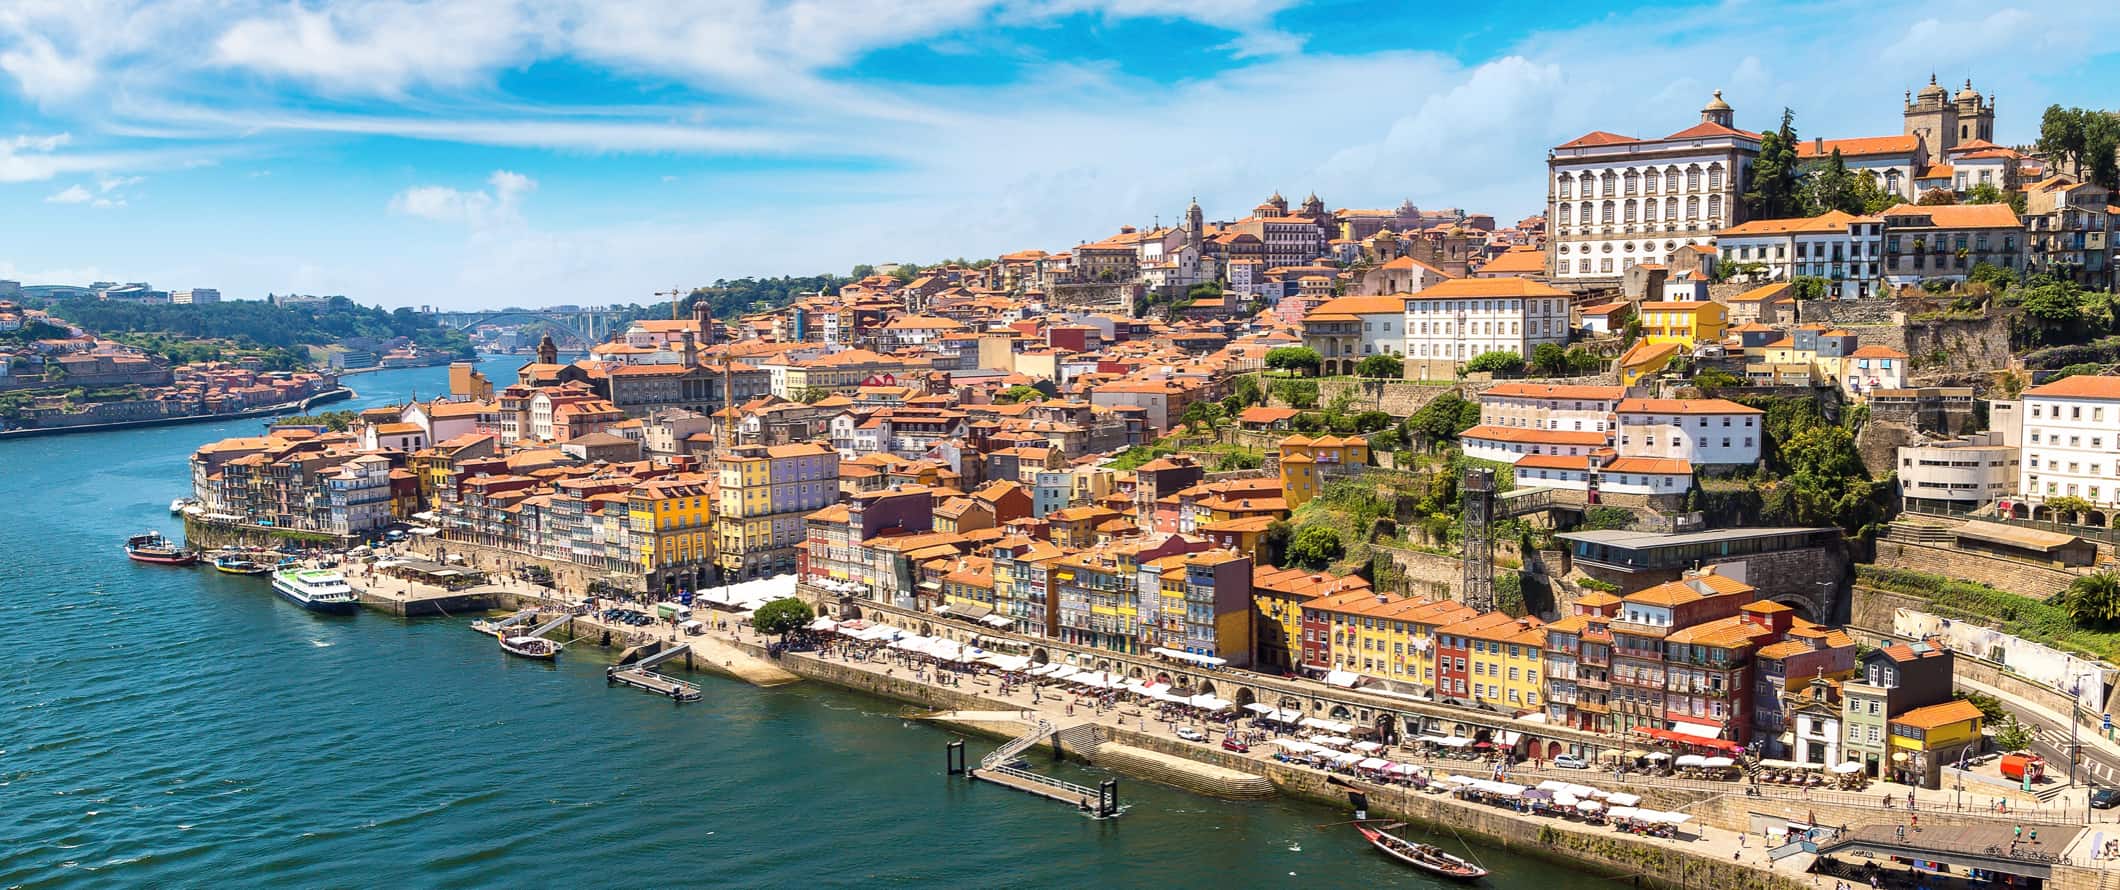 Porto, Portugal e seus edifícios coloridos nas colinas, como pode ser visto no rio Doru